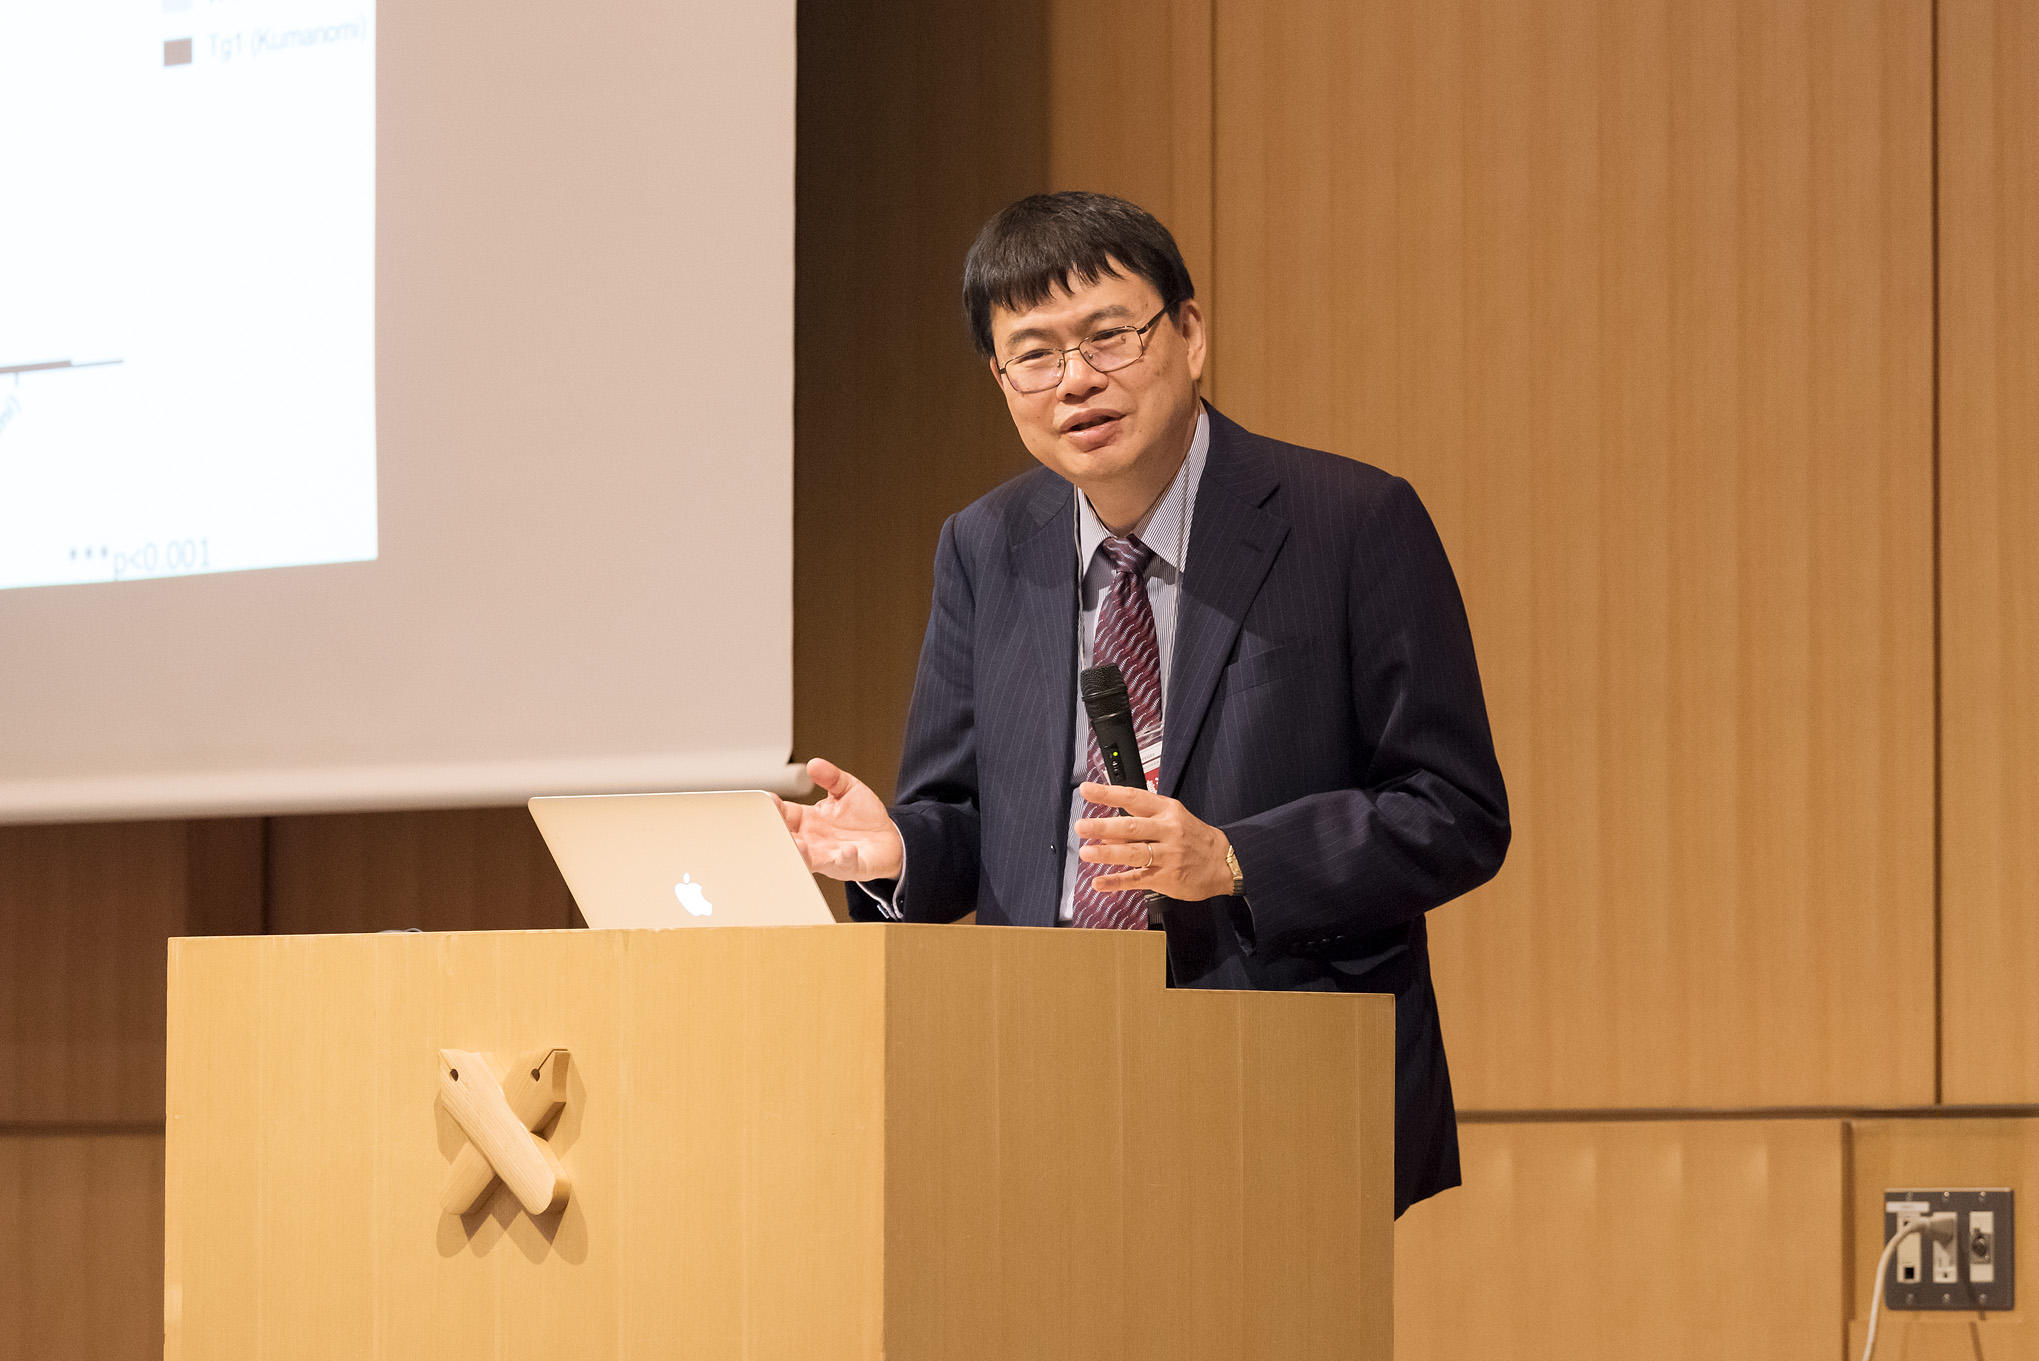 医学部生理学教室・岡野栄之教授による特別講演『幹細胞技術を用いた中枢神経系の再生医療と病態・創薬研究』